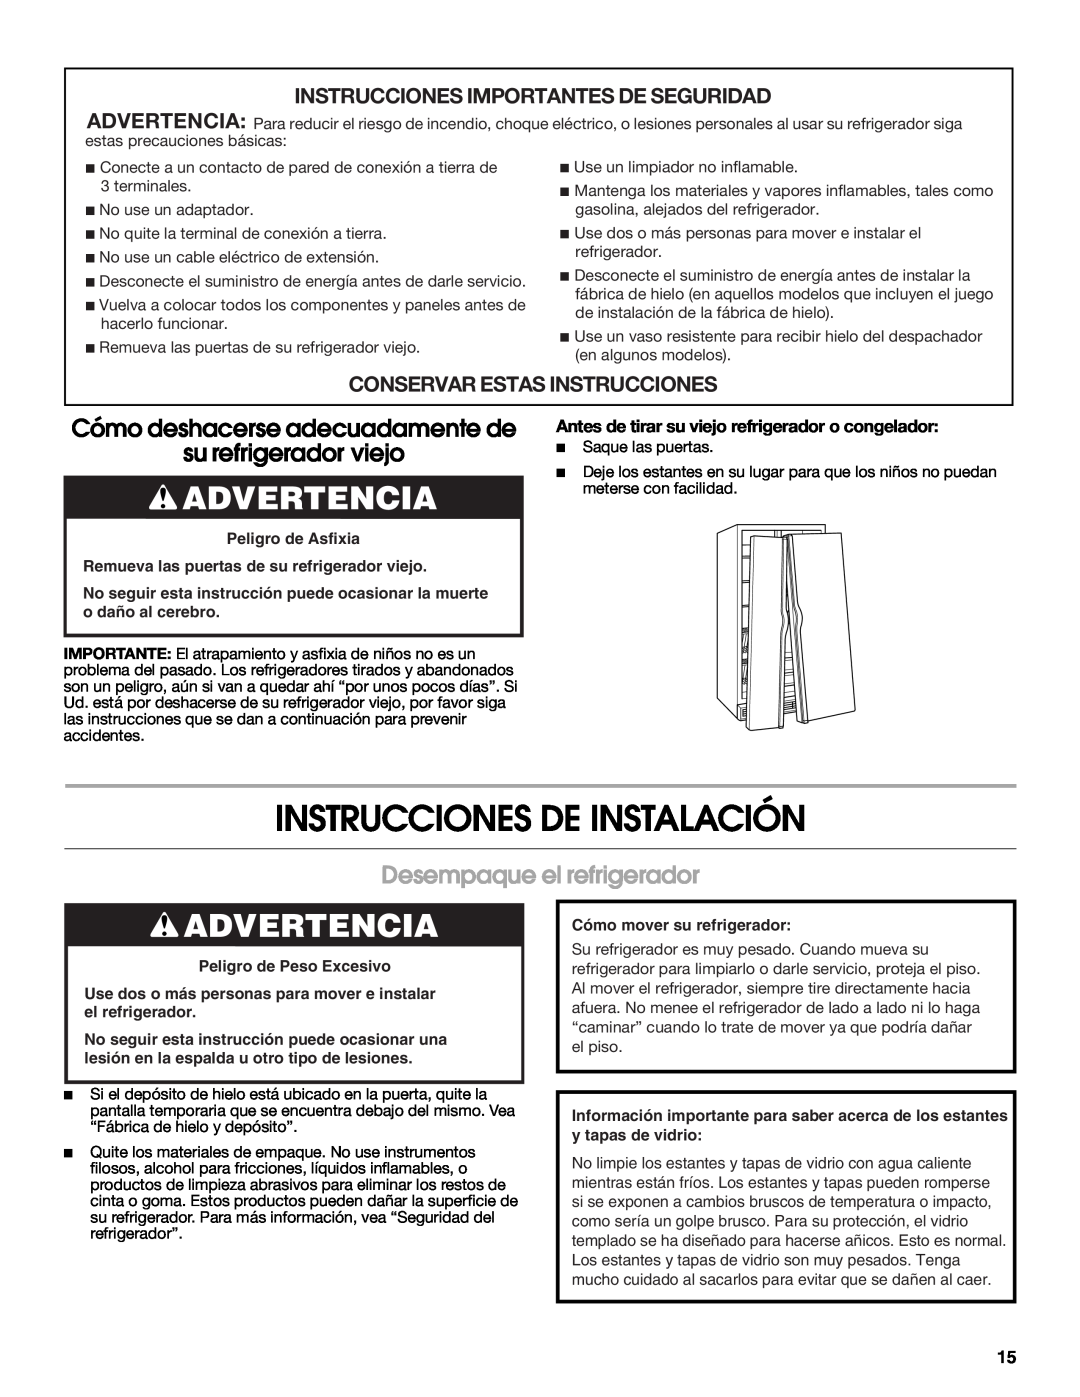 Whirlpool RS22AQXMQ01 Instrucciones De Instalación, Advertencia, Cómo deshacerse adecuadamente de su refrigerador viejo 